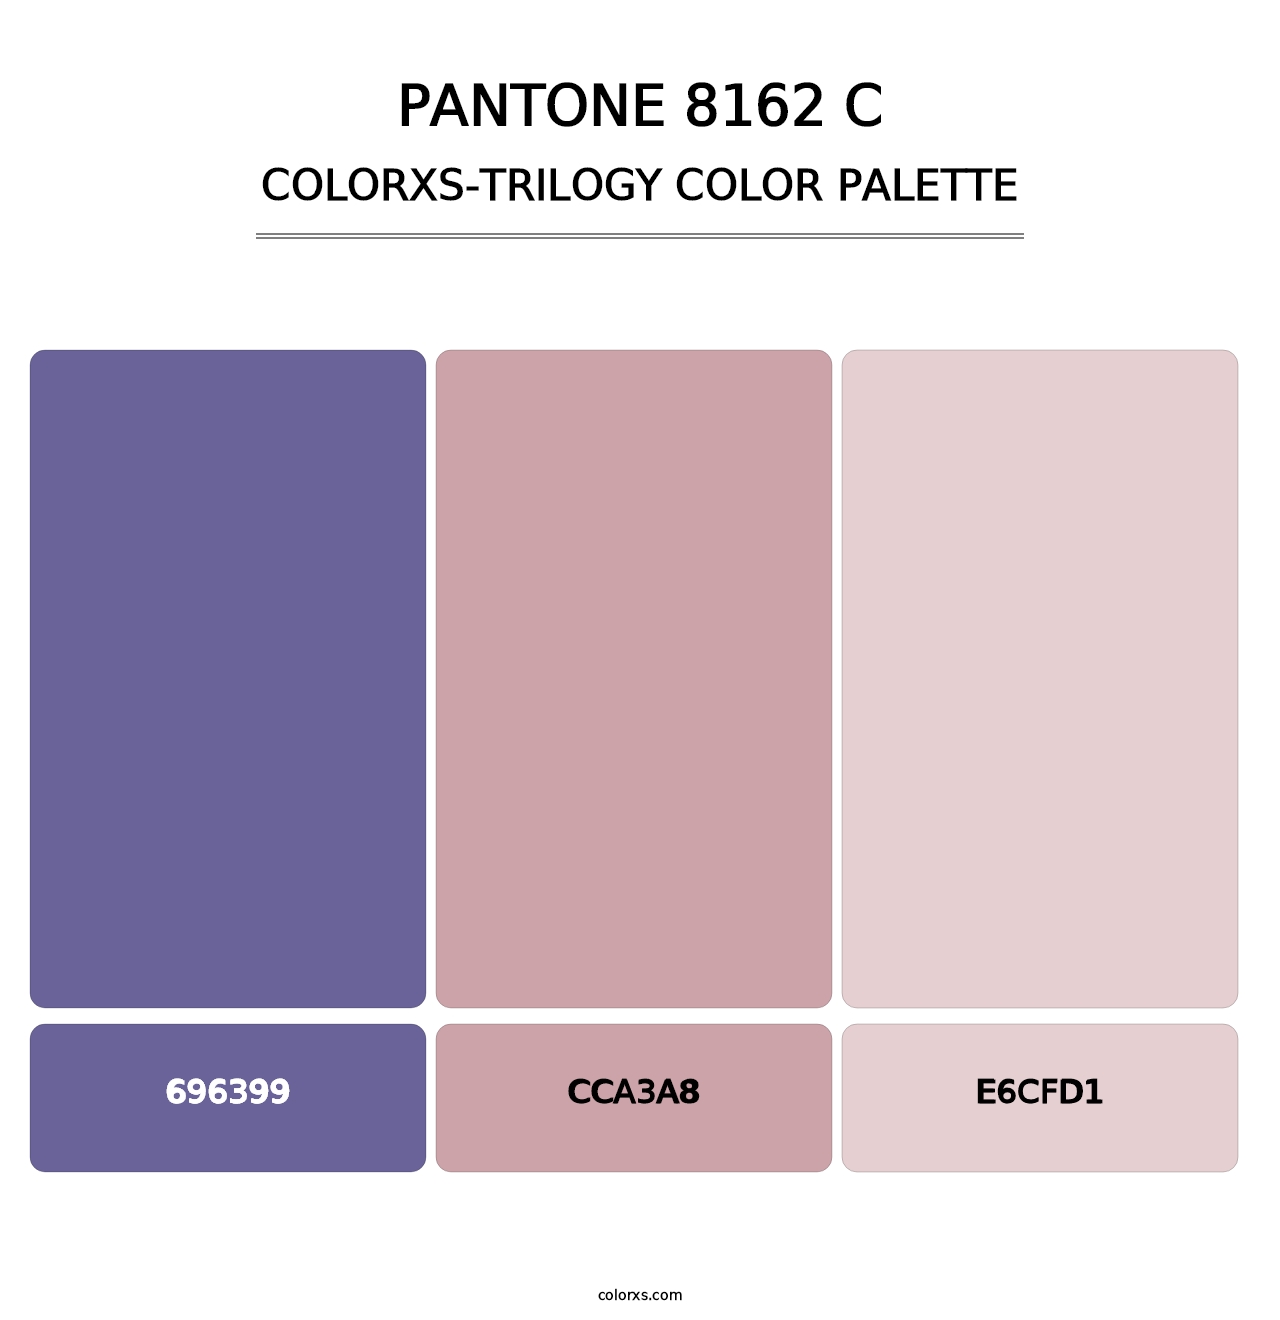 PANTONE 8162 C - Colorxs Trilogy Palette